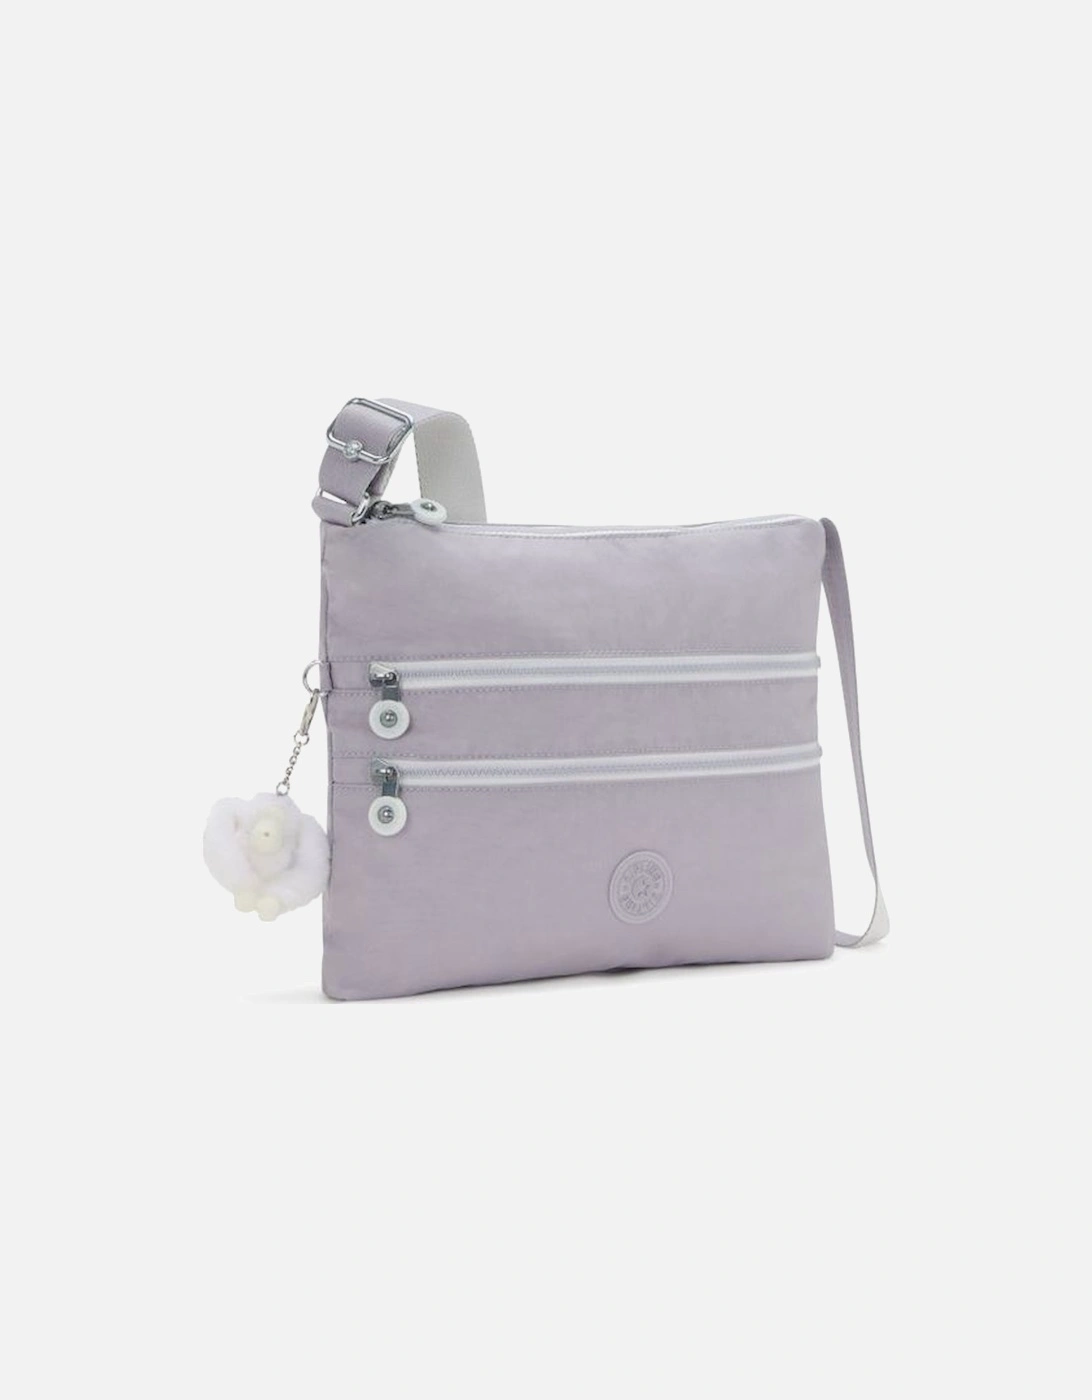 Alvar handbag in Tender Grey